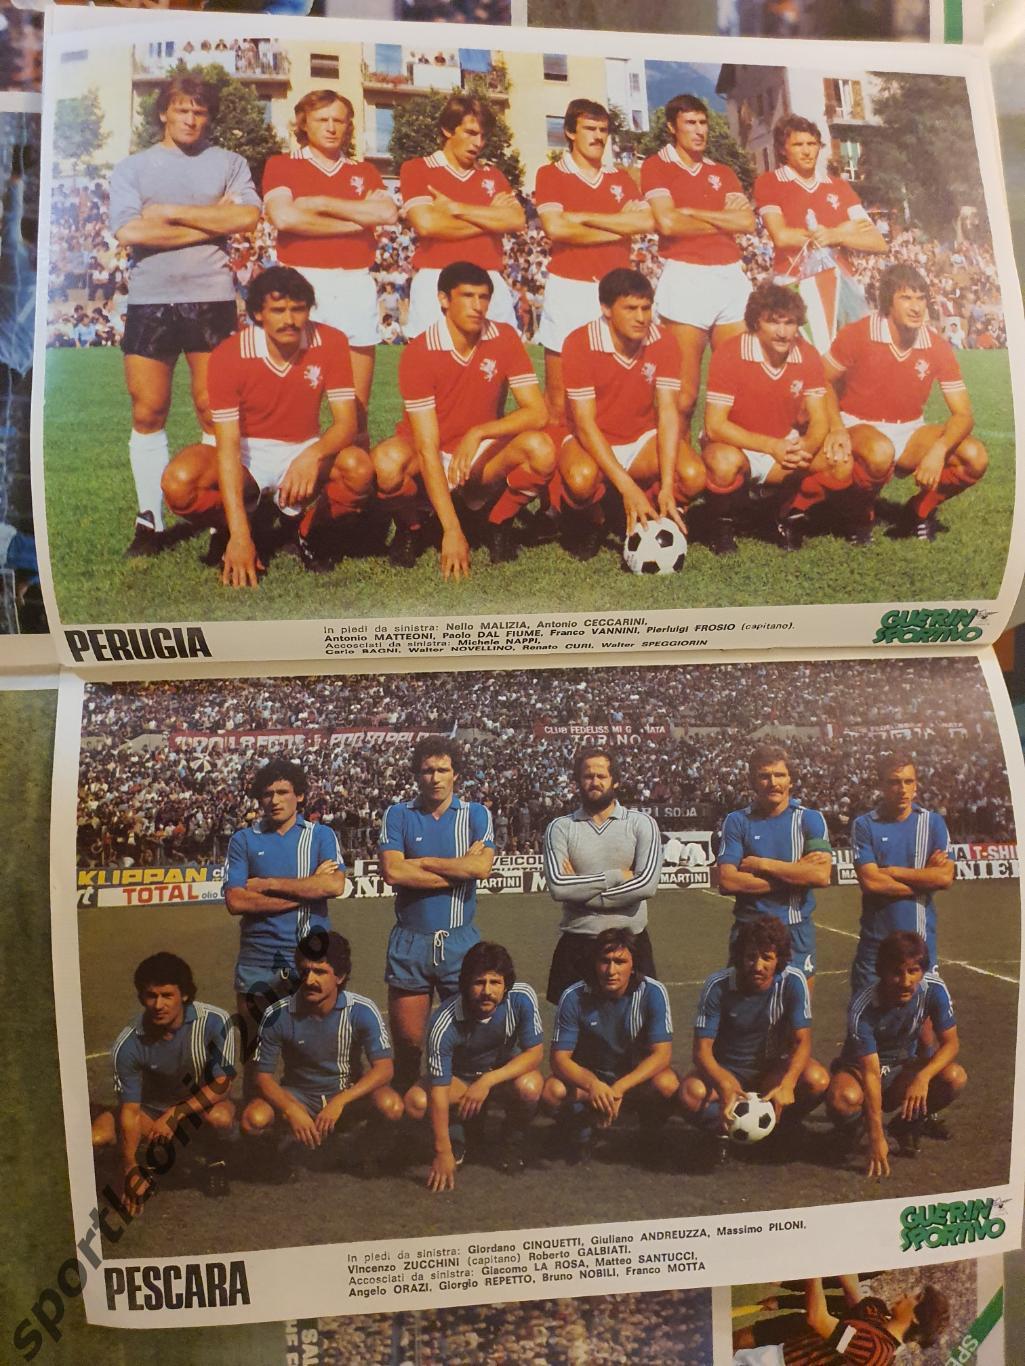 Guerin Sportivo 46/1977.12 постеров клубов высшей итальянской лиги.2